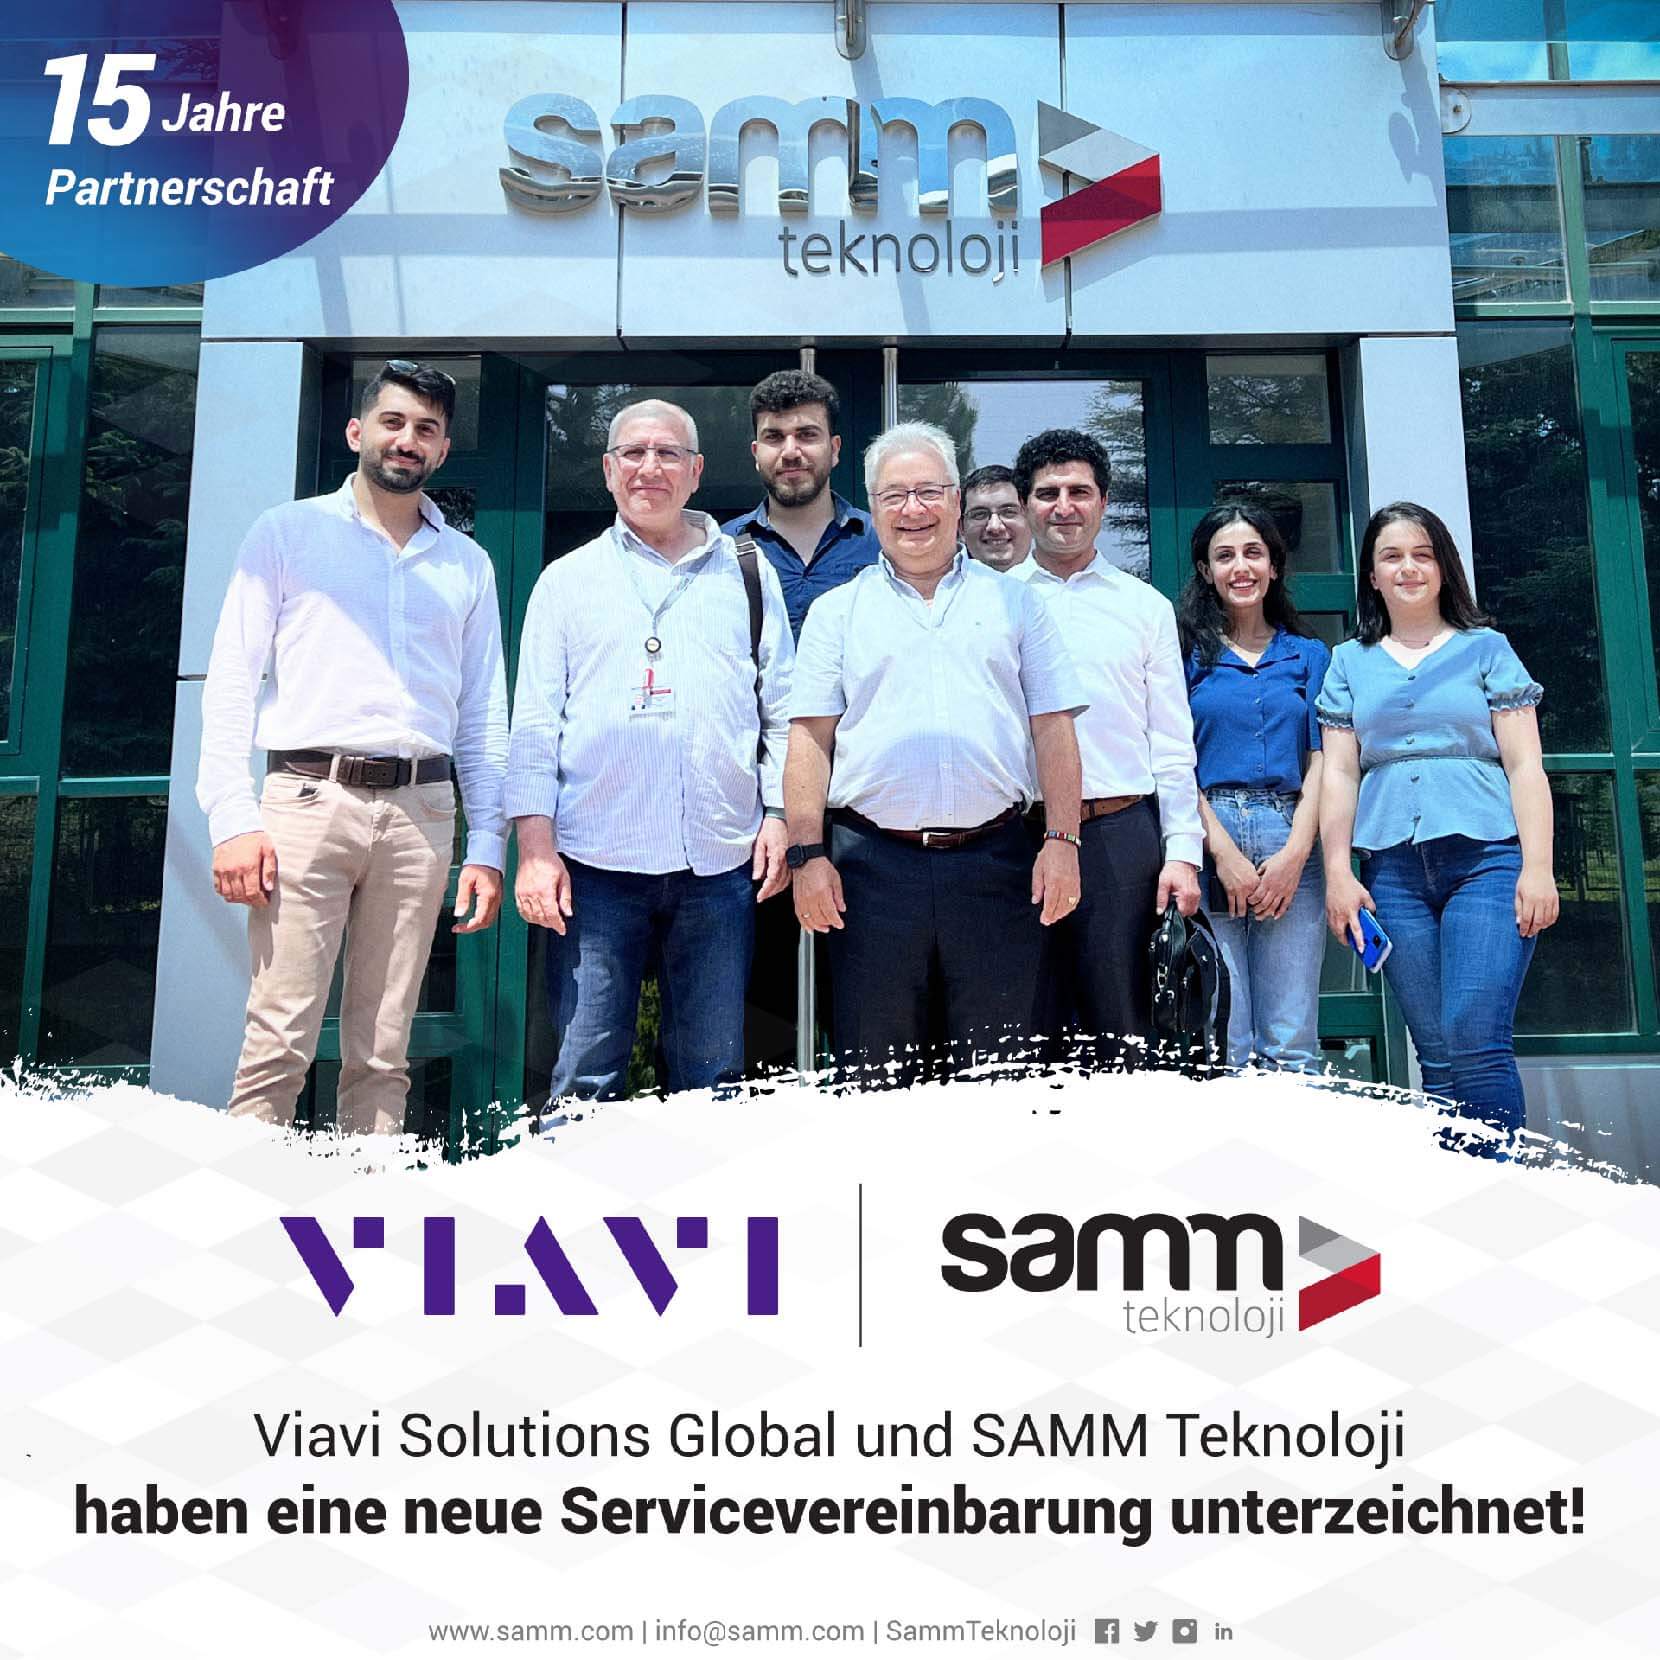 Viavi Solutions Global und SAMM Teknoloji haben eine neue Servicevereinbarung unterzeichnet!